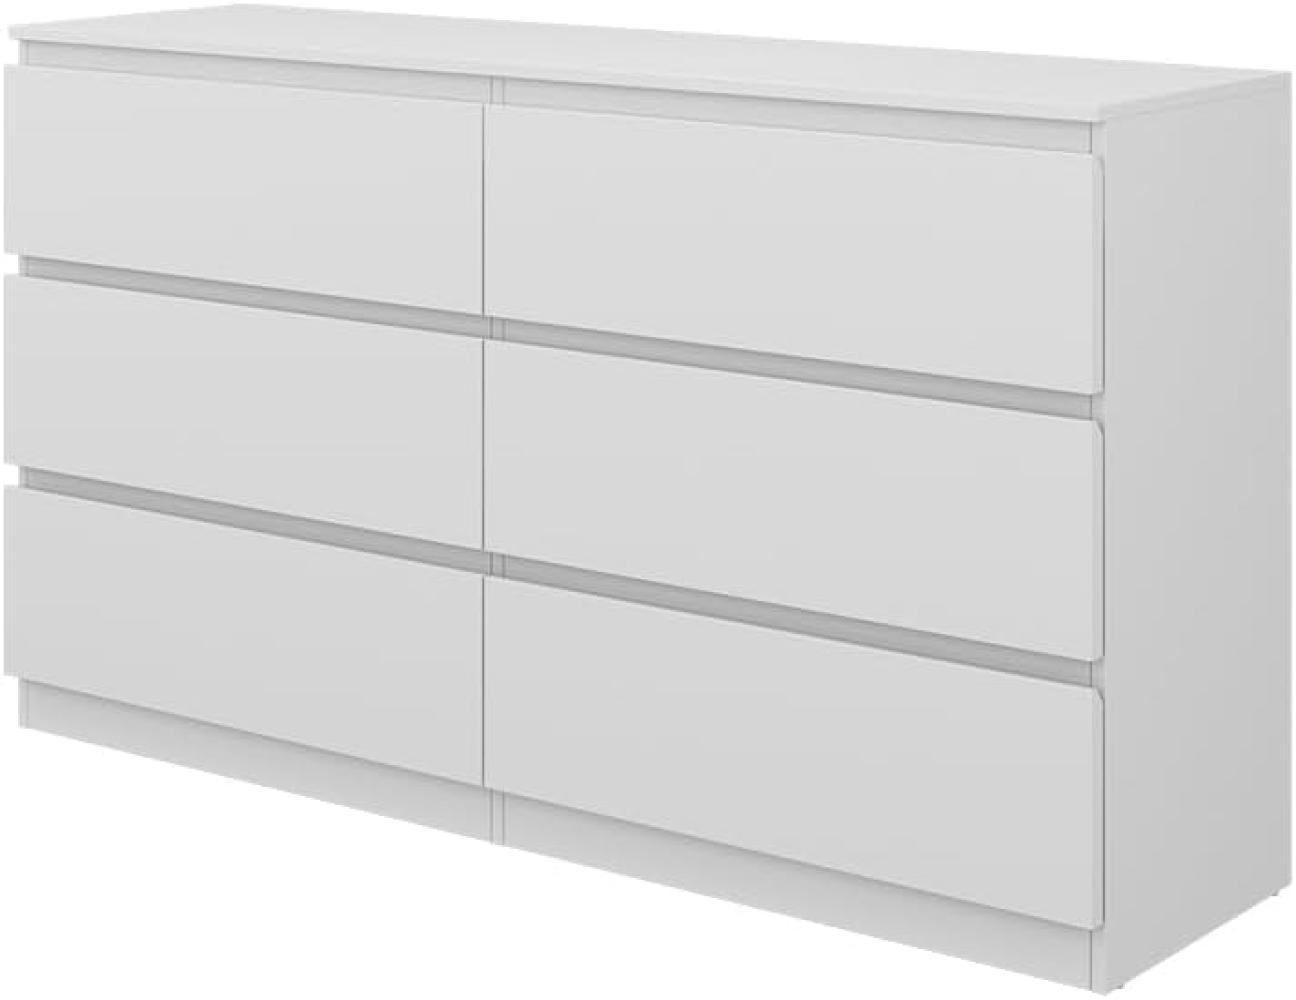 Vicco Kommode Calisto, Weiß 138 x 78,5 cm, mit 6 Schubfächer, Sideboard, Schrank Bild 1